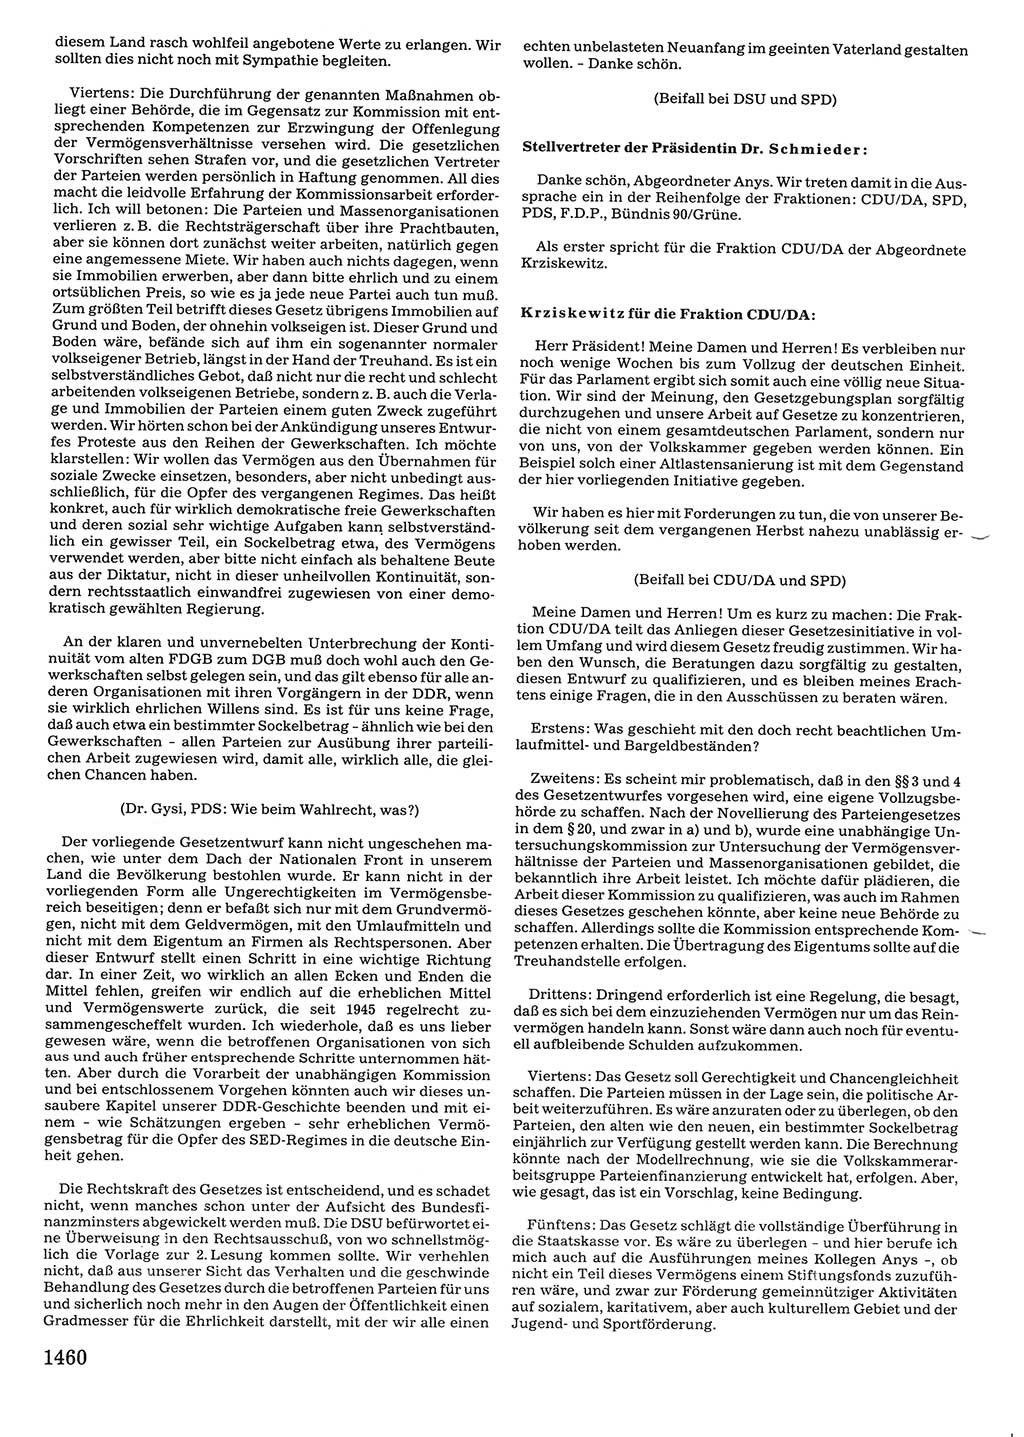 Tagungen der Volkskammer (VK) der Deutschen Demokratischen Republik (DDR), 10. Wahlperiode 1990, Seite 1460 (VK. DDR 10. WP. 1990, Prot. Tg. 1-38, 5.4.-2.10.1990, S. 1460)